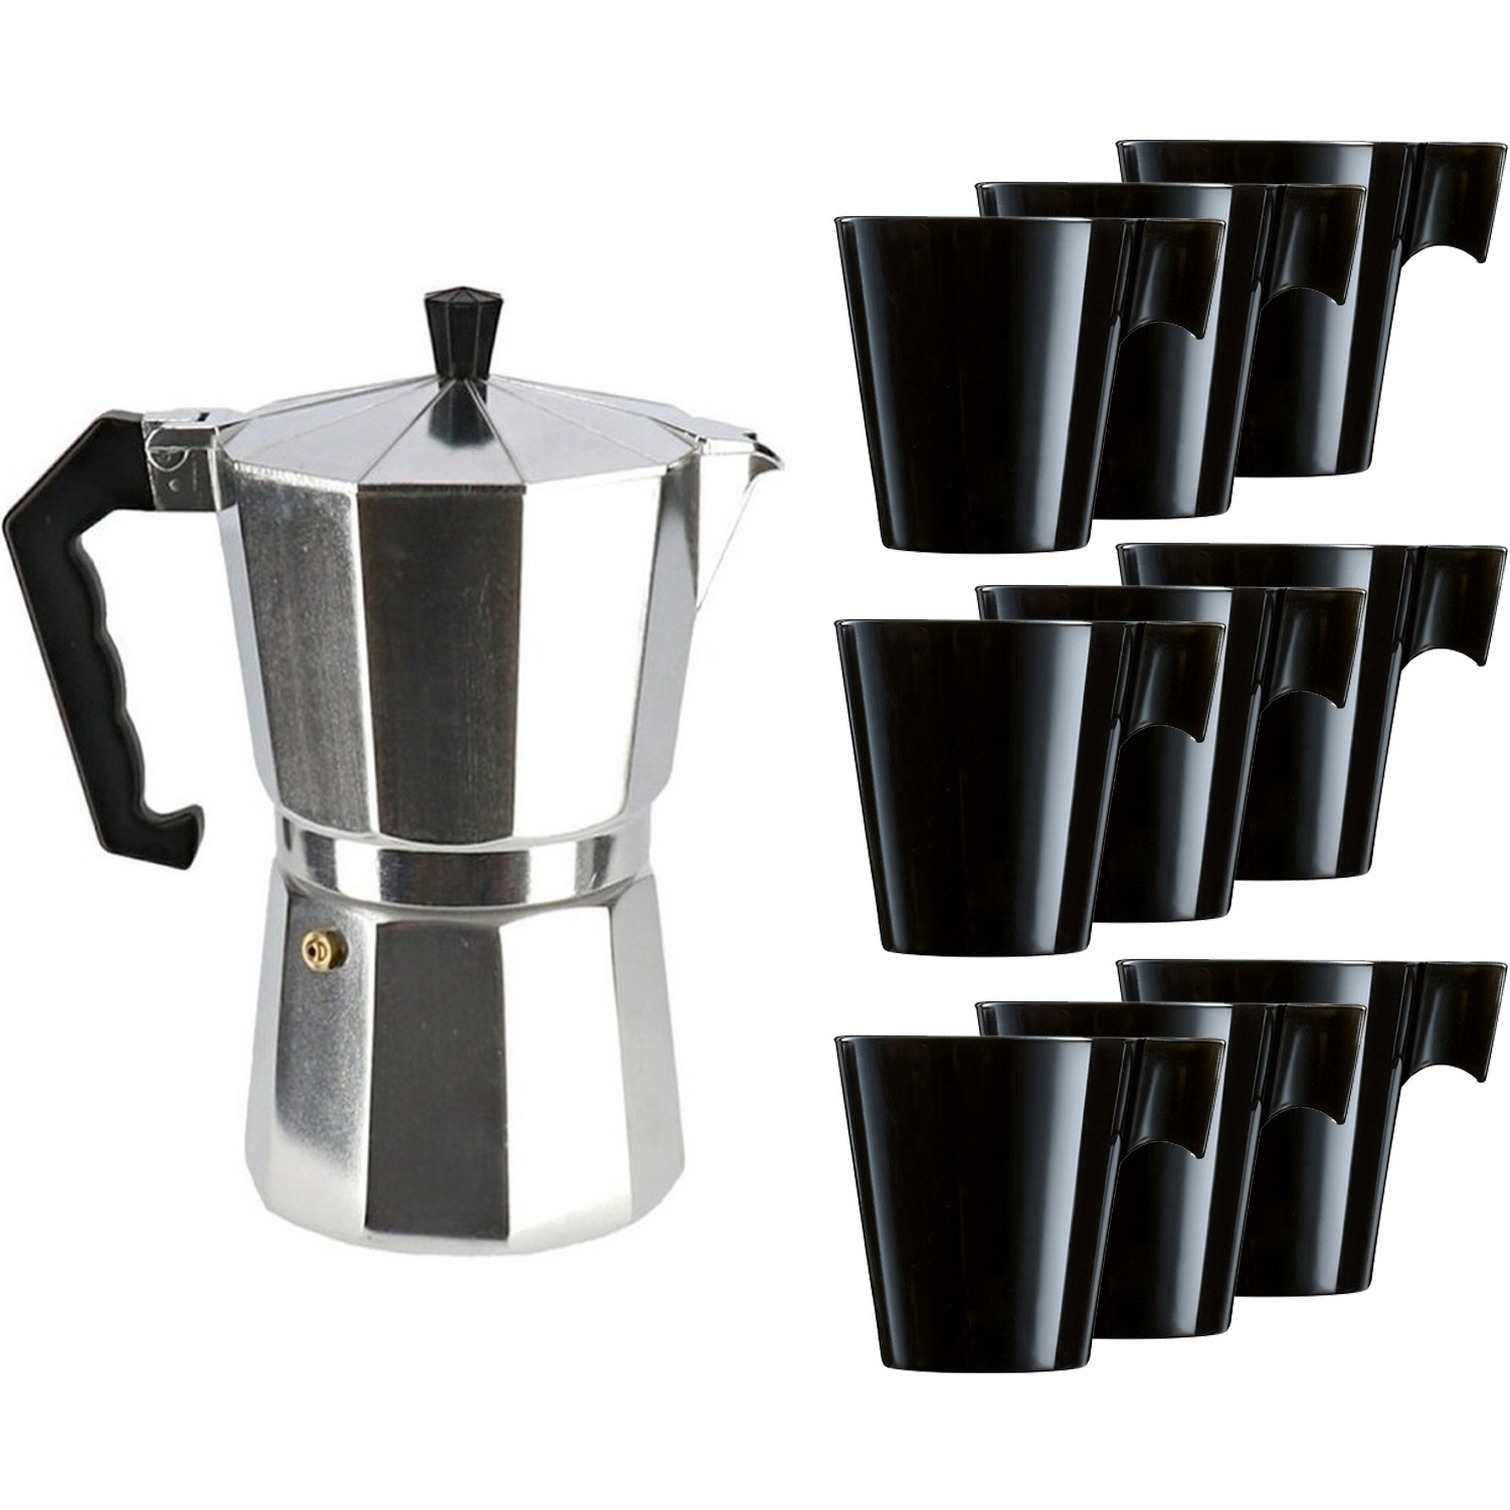 Percolator-espresso apparaat zilver met 9x zwarte kopjes-mokken